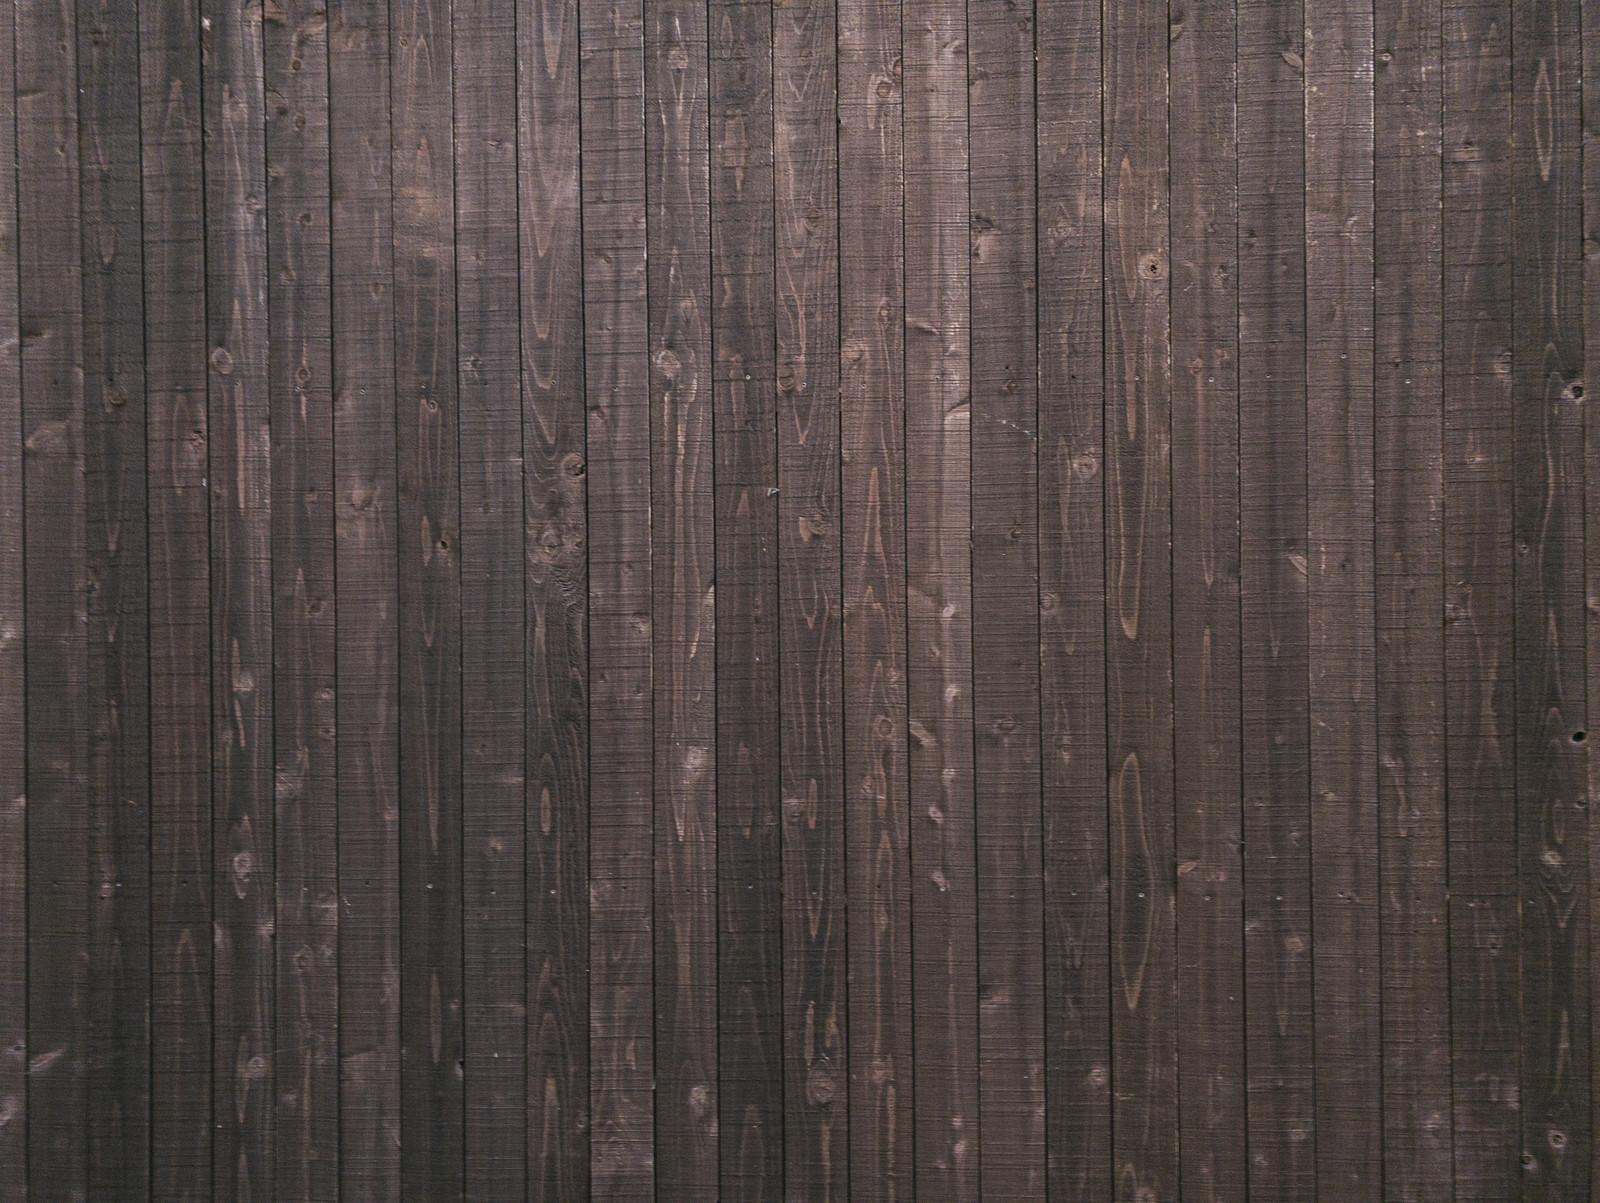 「木造の壁 | フリー素材のぱくたそ」の写真